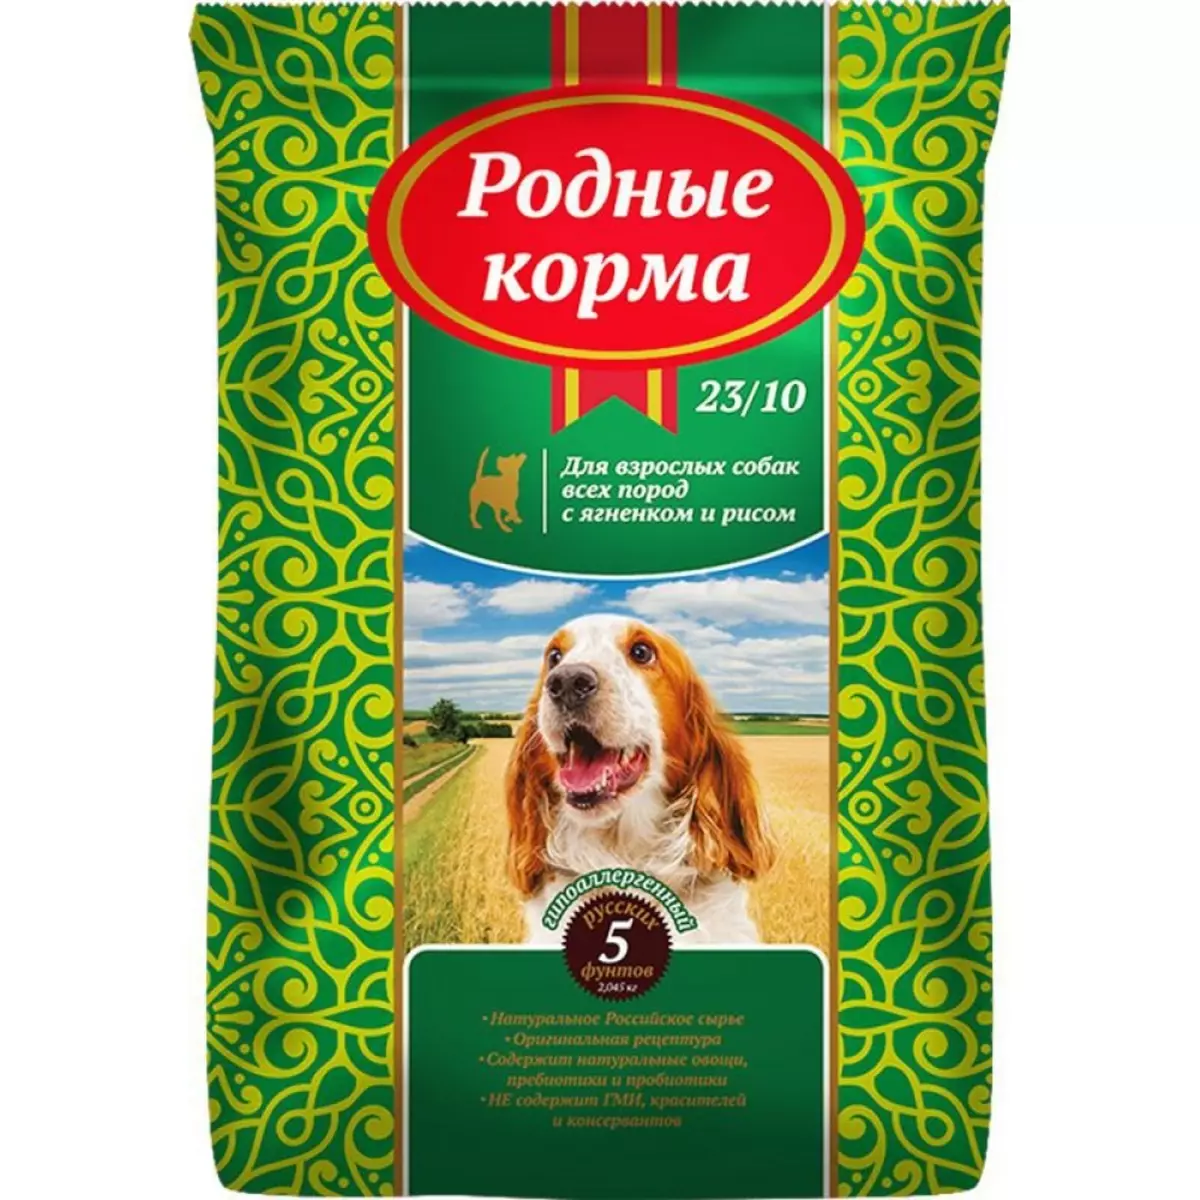 Premium Class Feed för hundar (43 foton): Betyg av importerade goda flöden för valpar, en lista över ryska och tyska hundfoder 12254_13